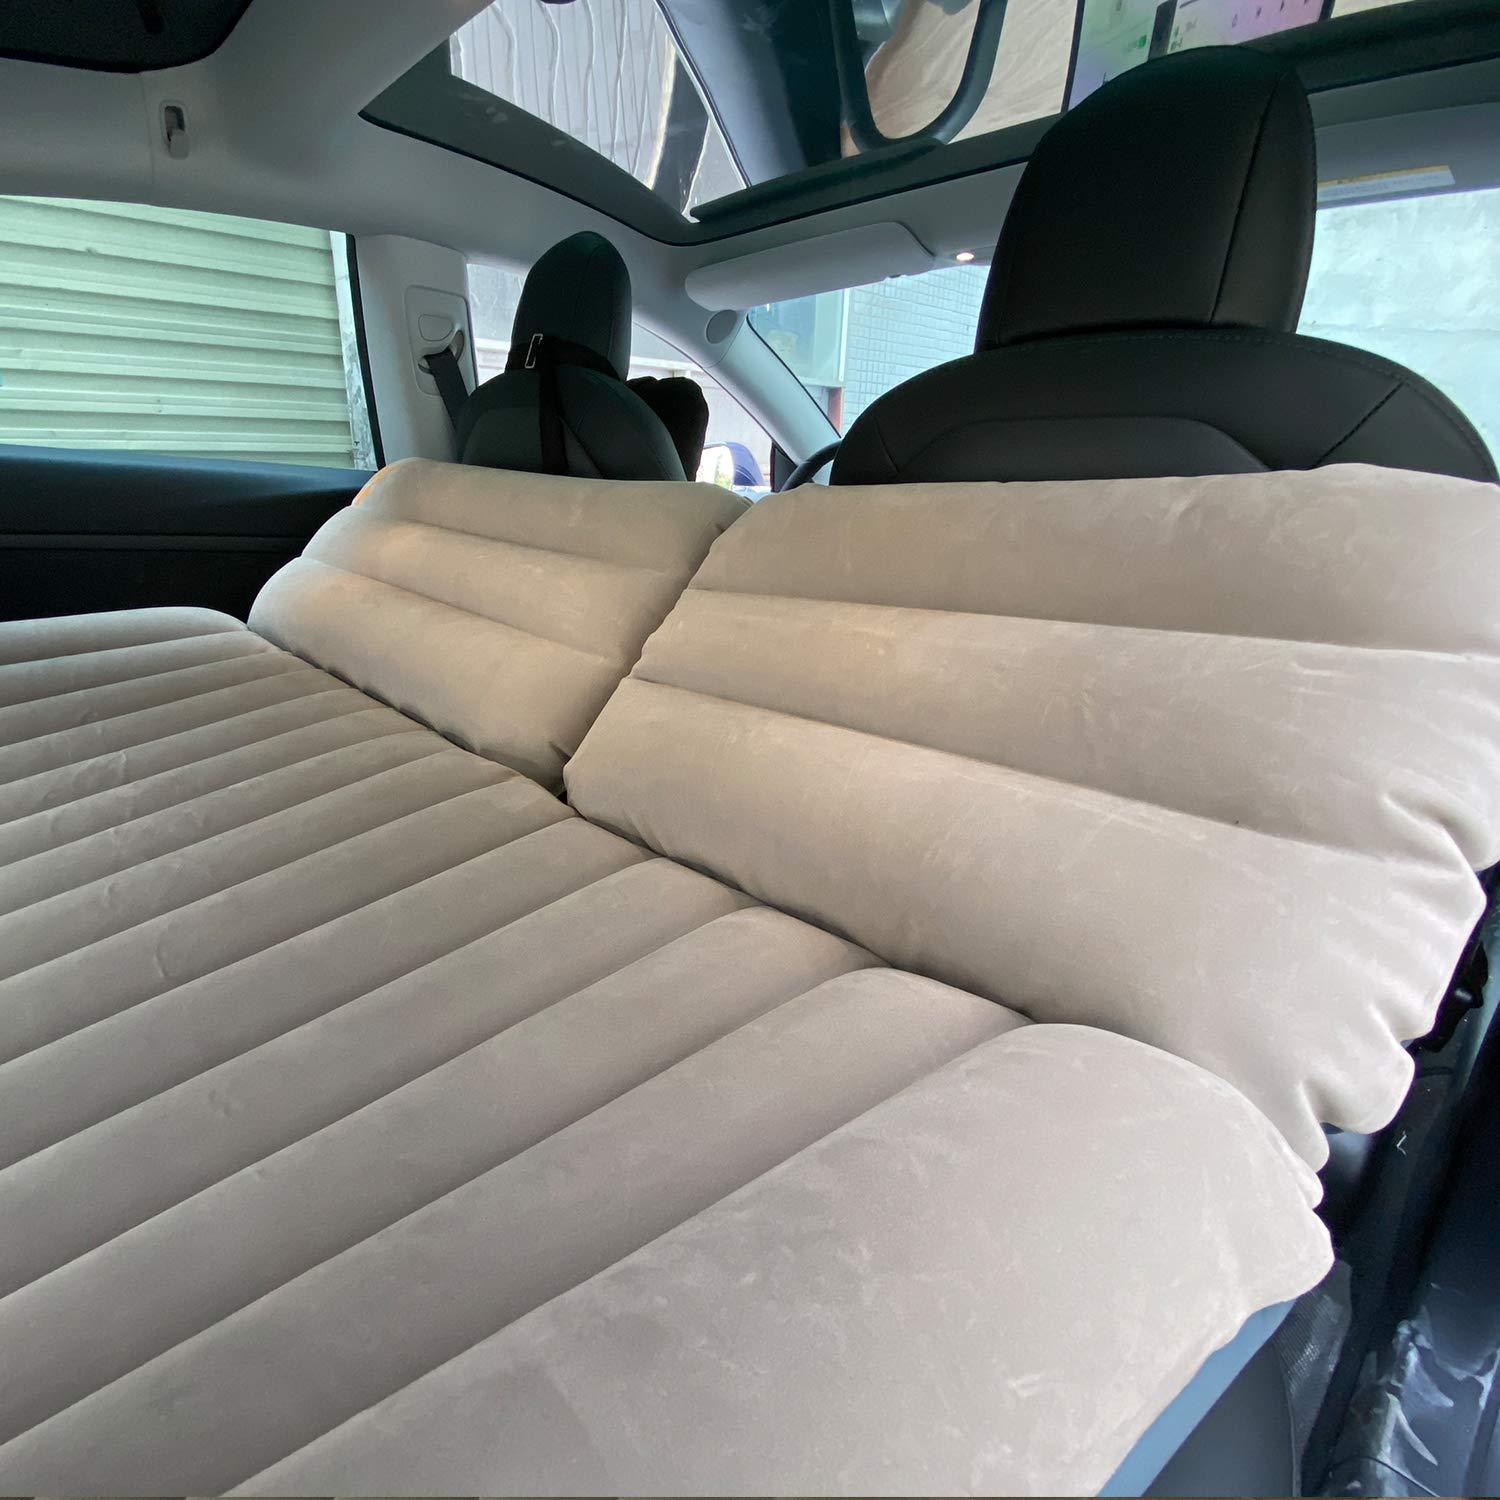  BASENOR Tesla Mattress Portable Camping Air Bed